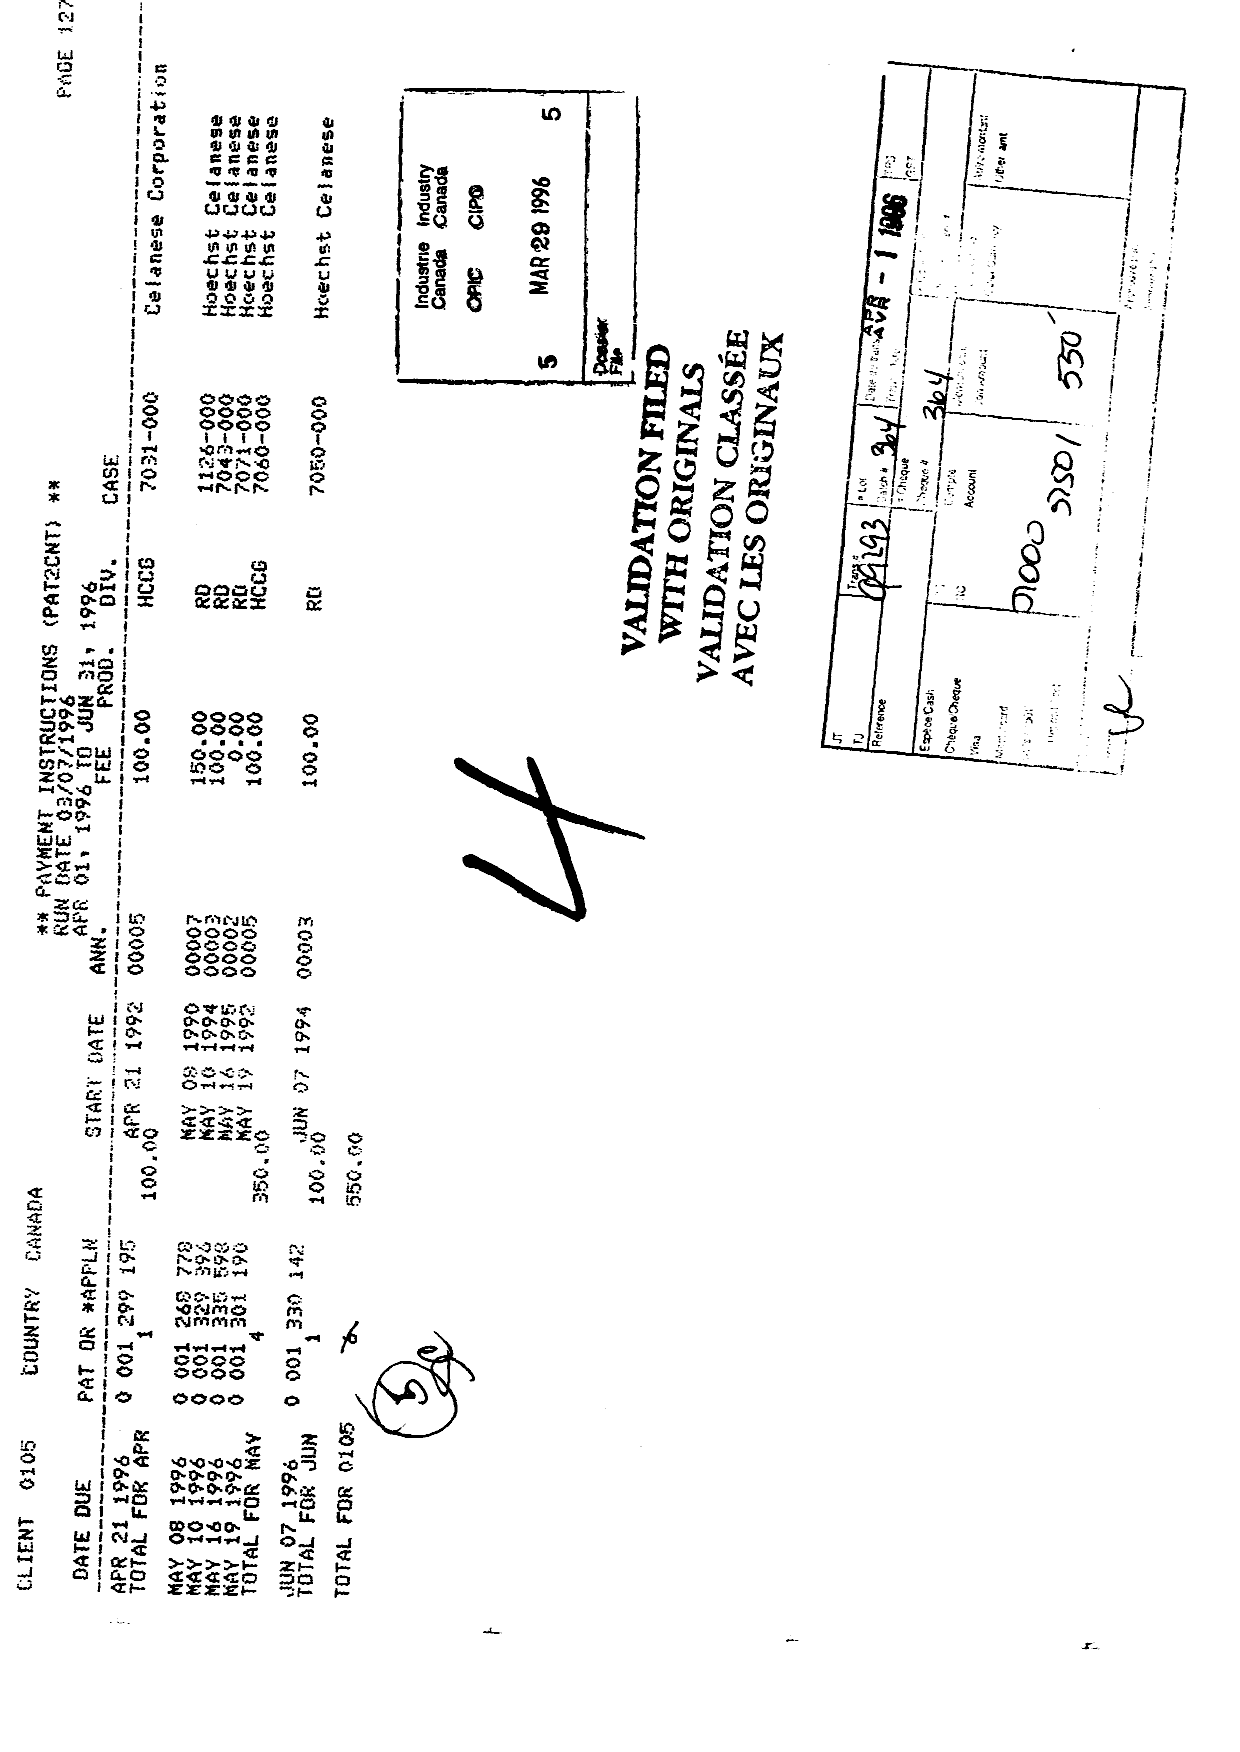 Document de brevet canadien 1299195. Taxes 19960329. Image 1 de 1